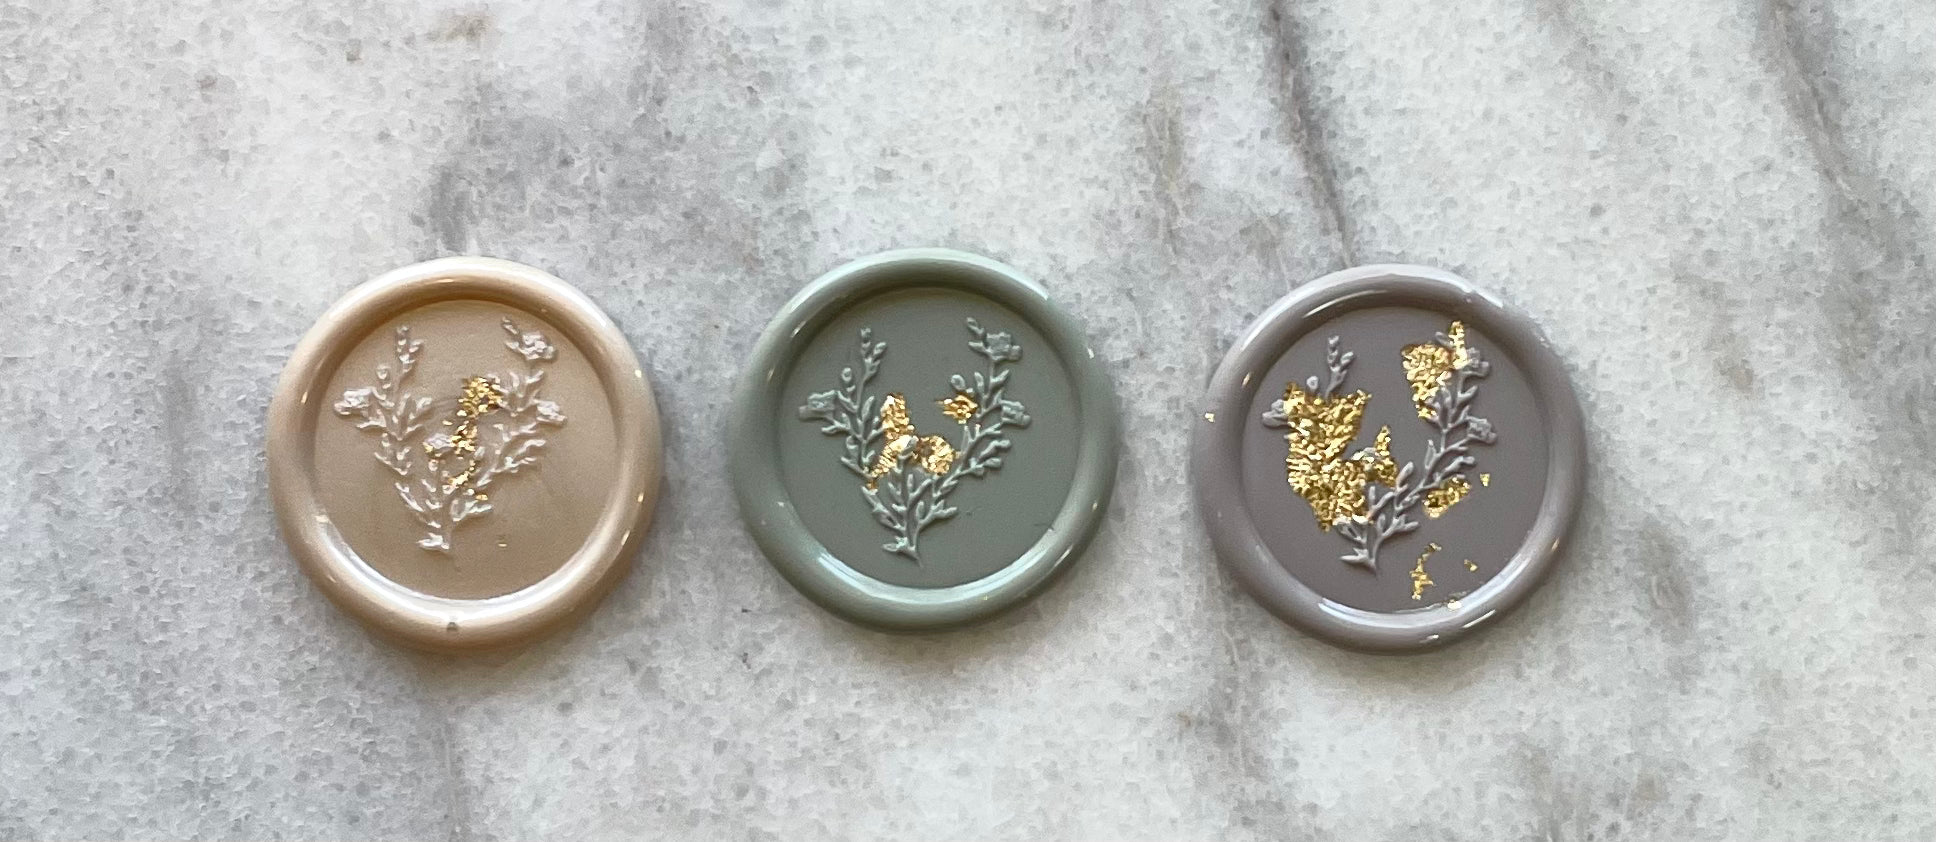 Gold Flake Wax Seal Self Adhesive Wax Seals - Floral Leaf Wax